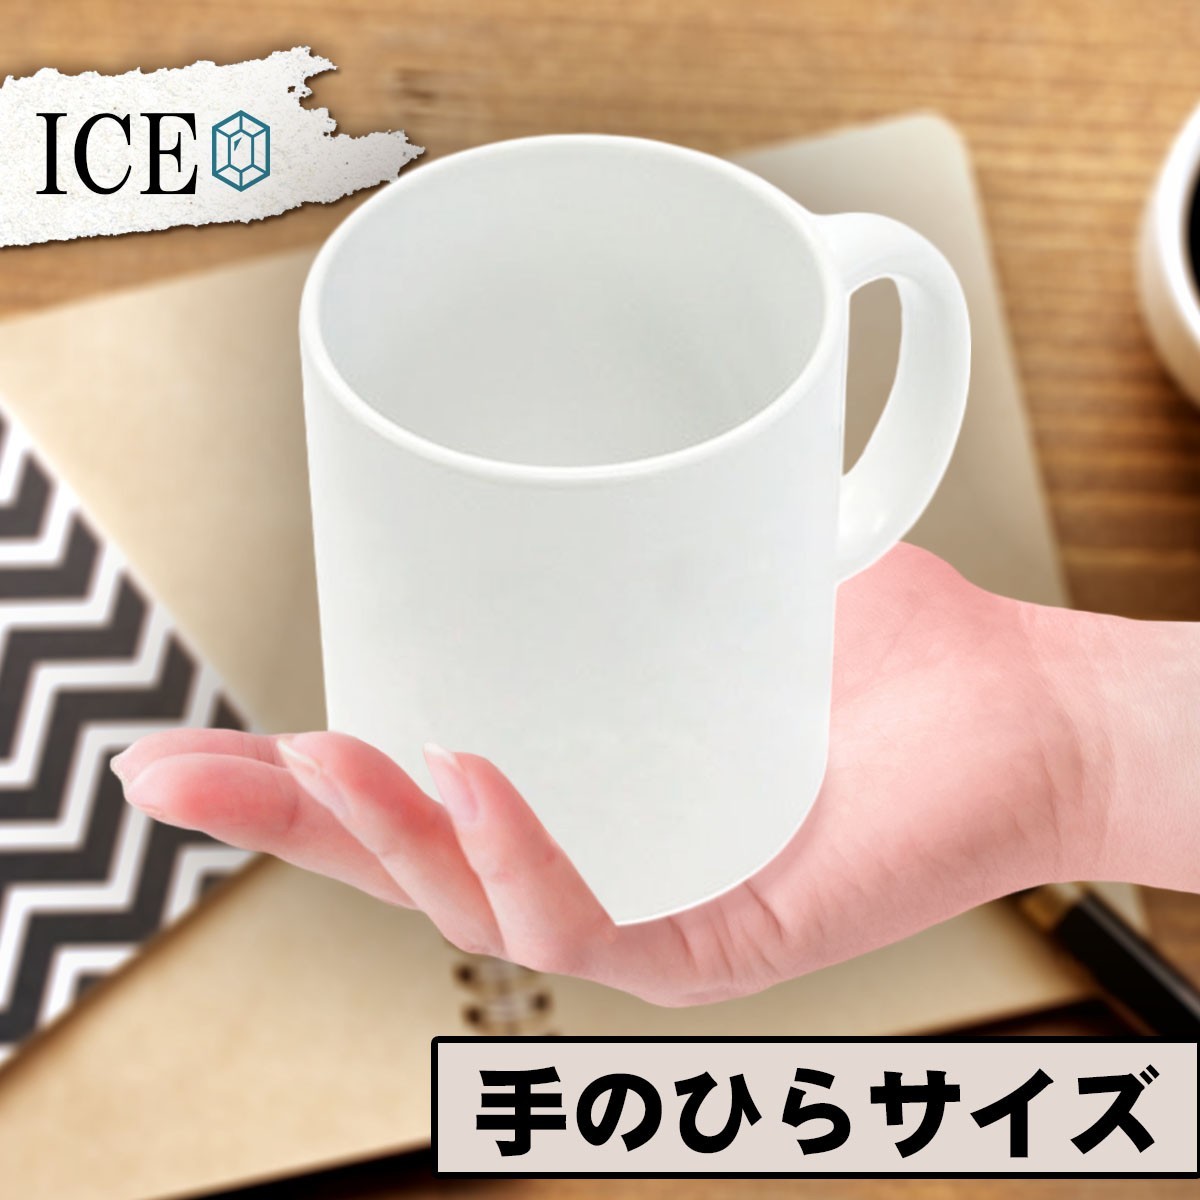 冷蔵庫 おもしろ マグカップ コップ 陶器 可愛い かわいい 白 シンプル かわいい カッコイイ シュール 面白い ジョーク ゆるい プレゼント_画像2